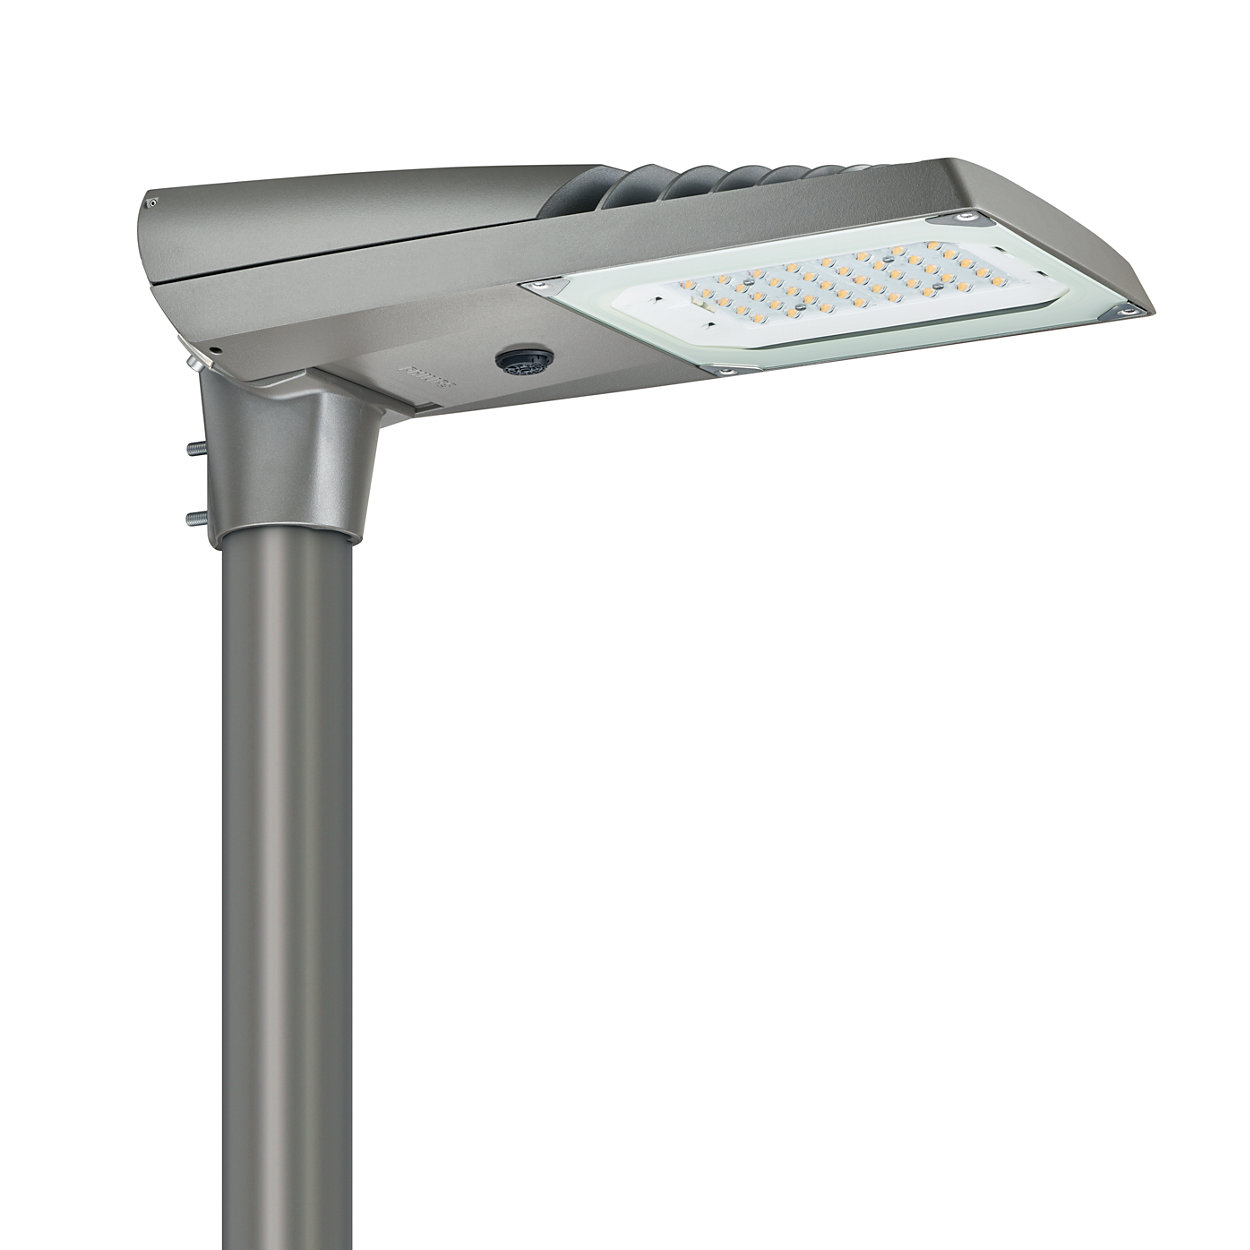 Luma gen2 – The standard in road lighting, redefined